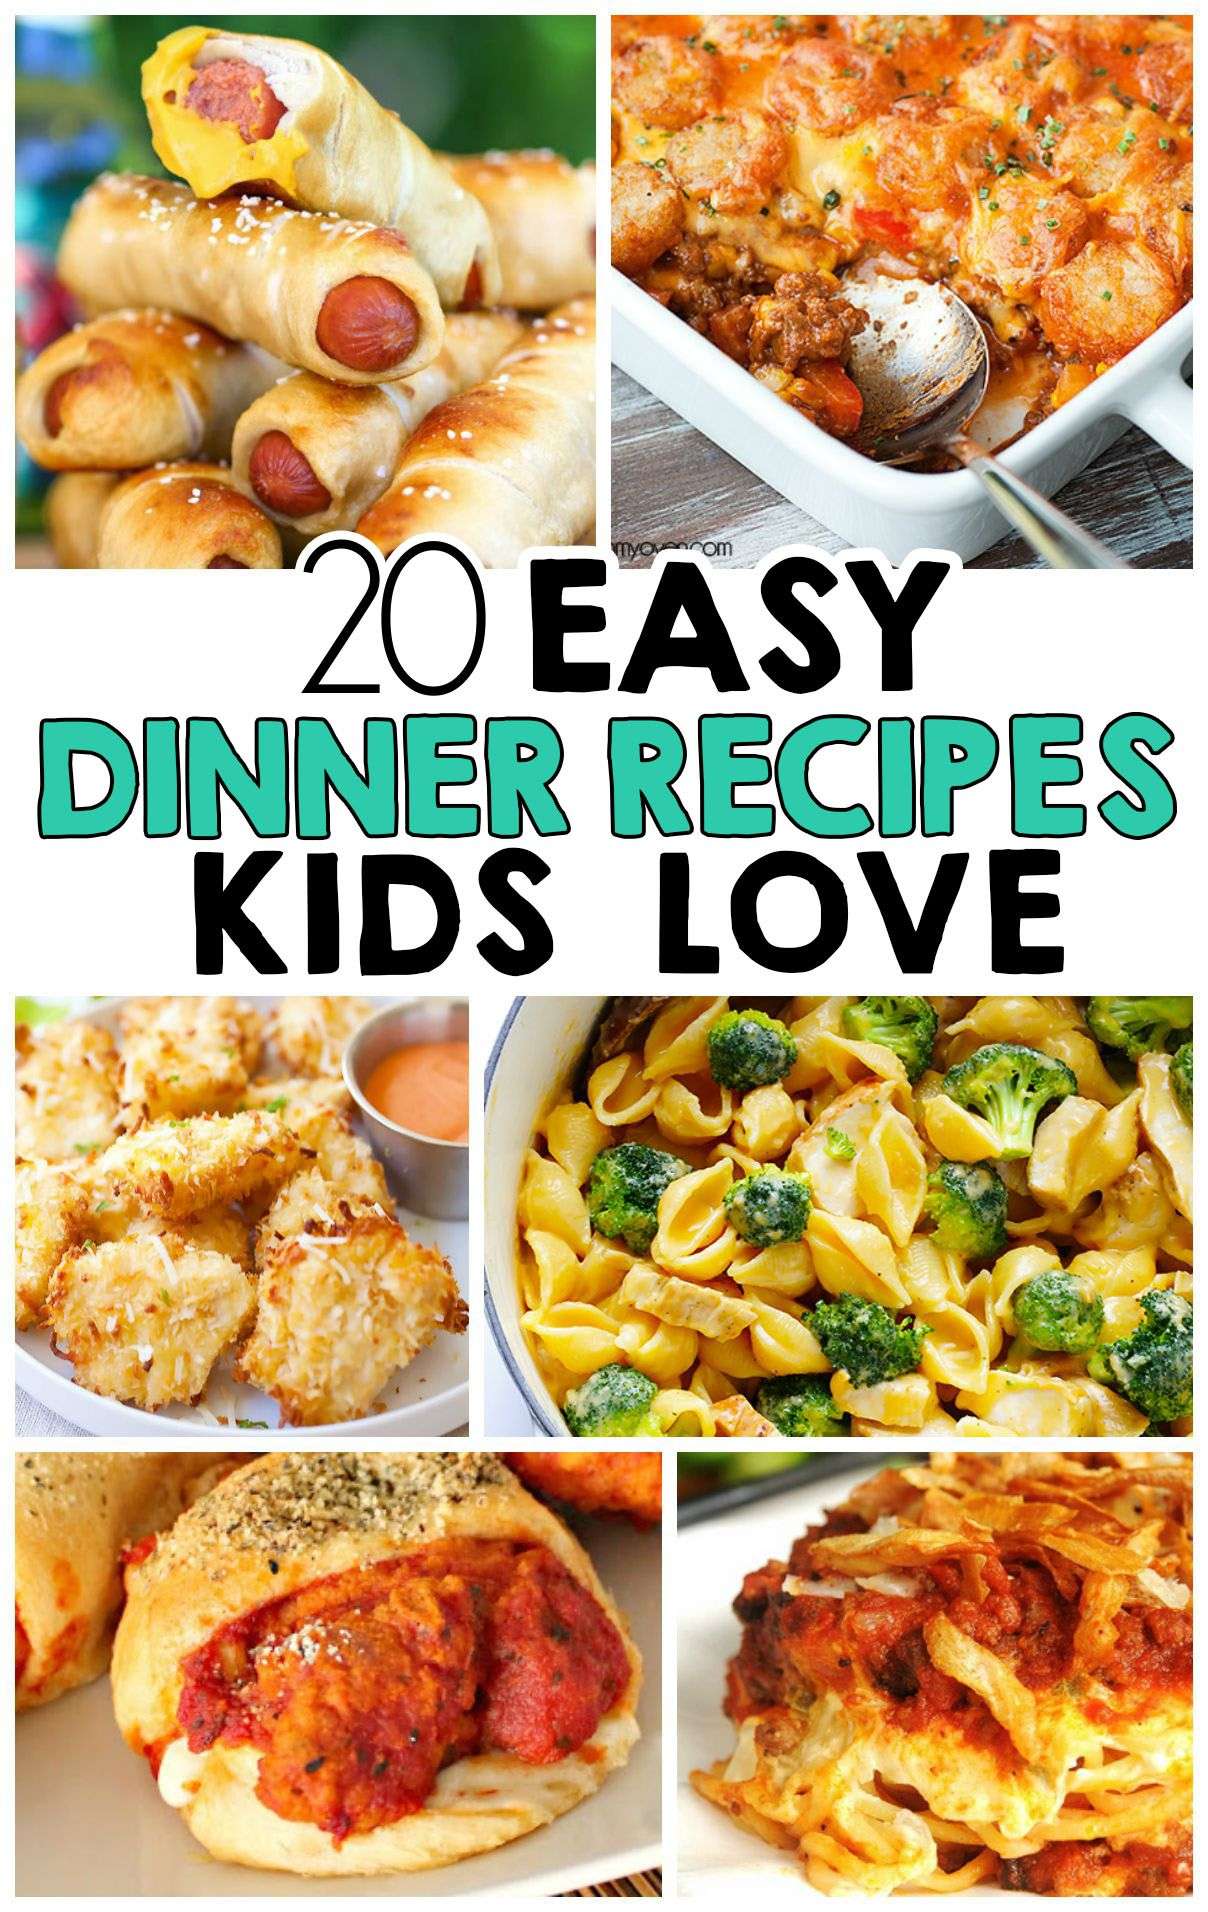 20 Easy Dinner Recipes That Kids Love